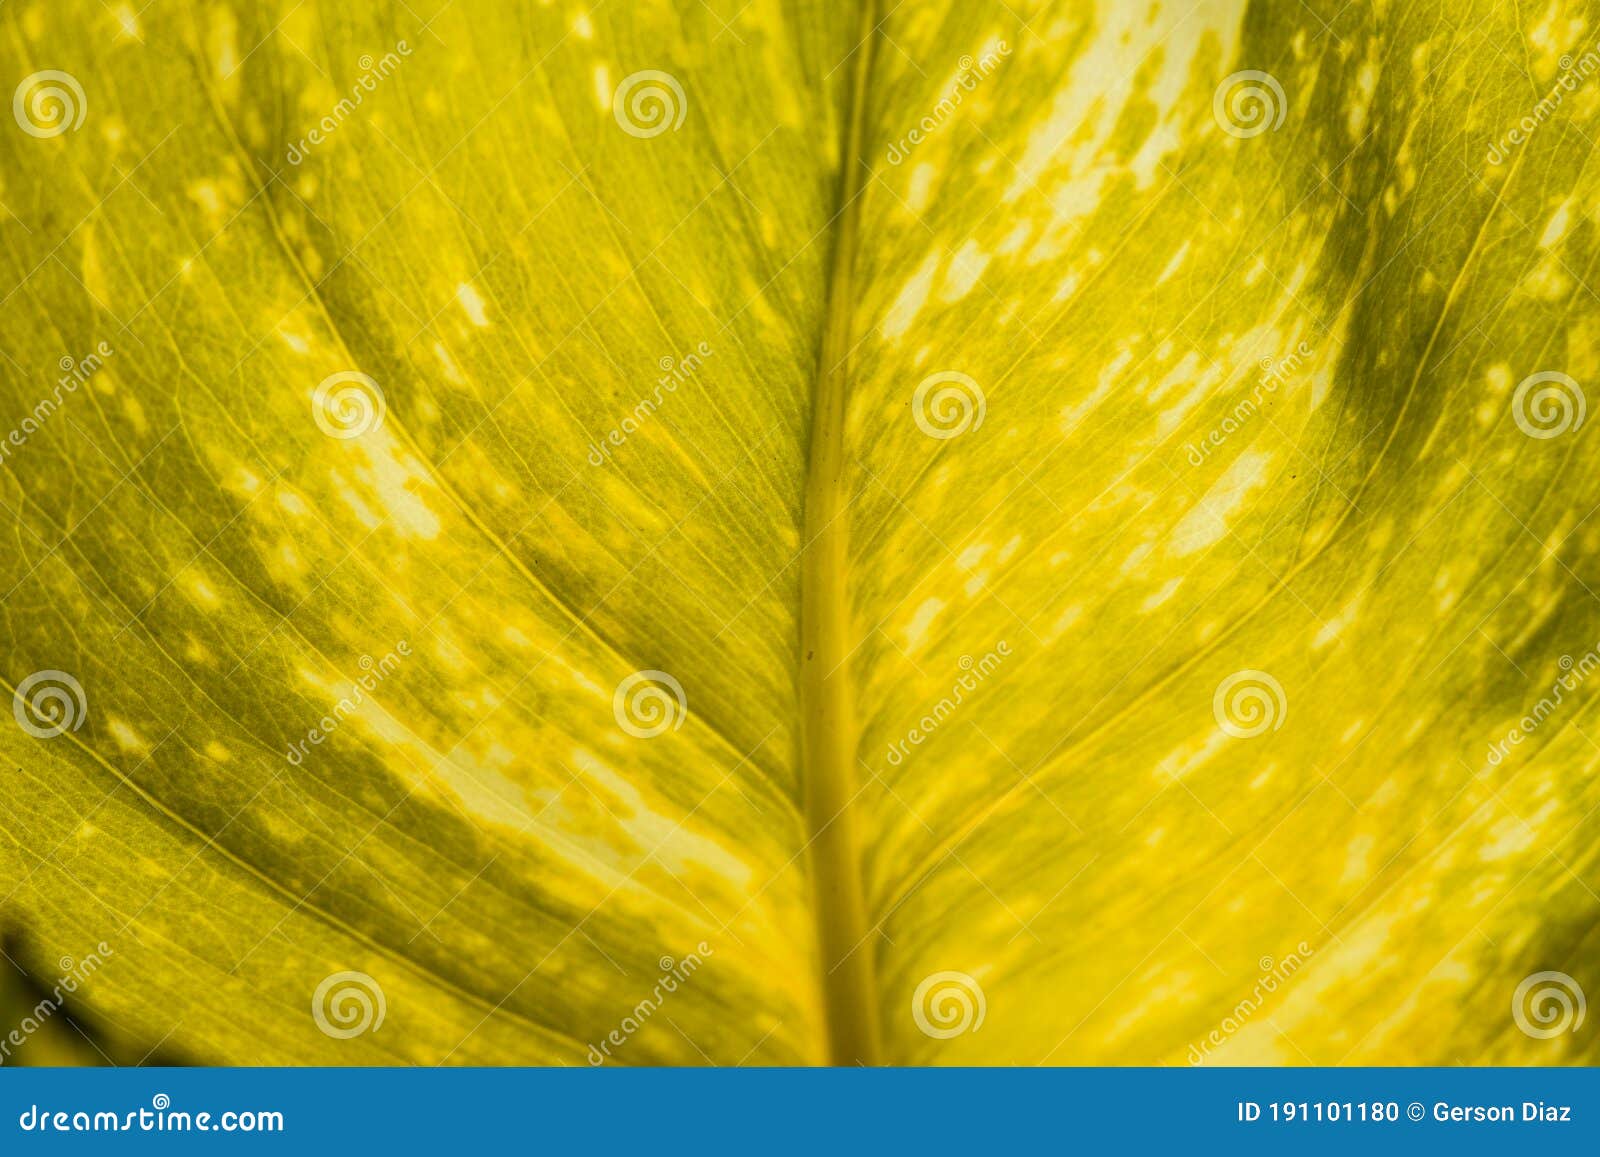 yellow potus (epipremnum aureum) leaf